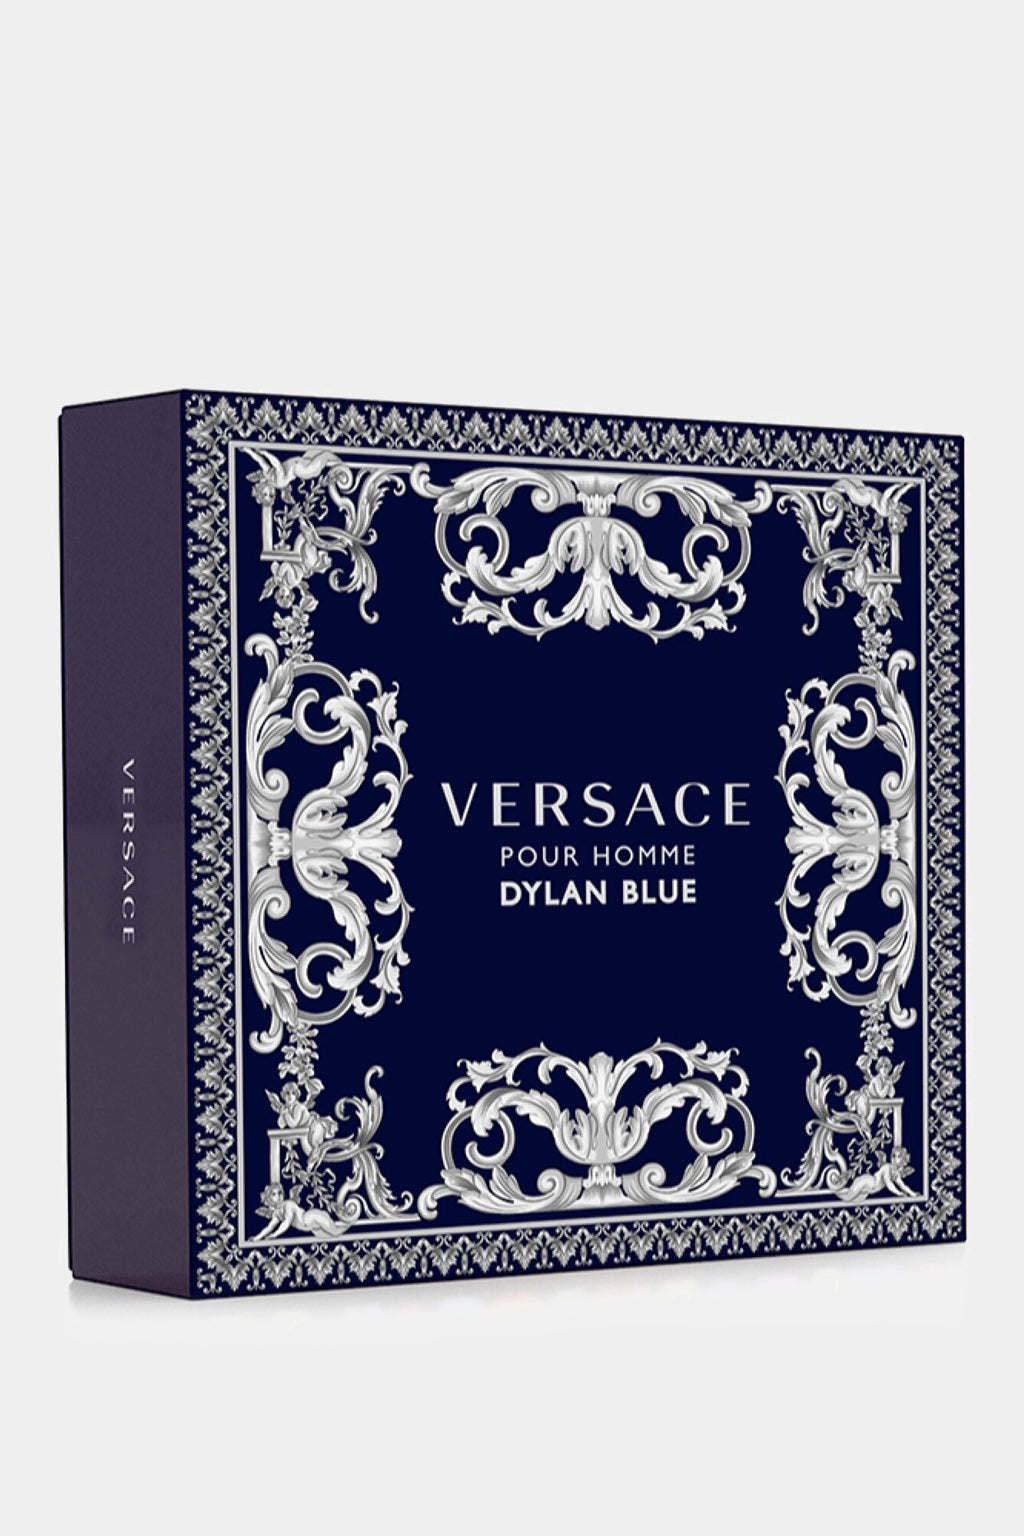 Versace - Dylan Blue Eau de Toilette Set